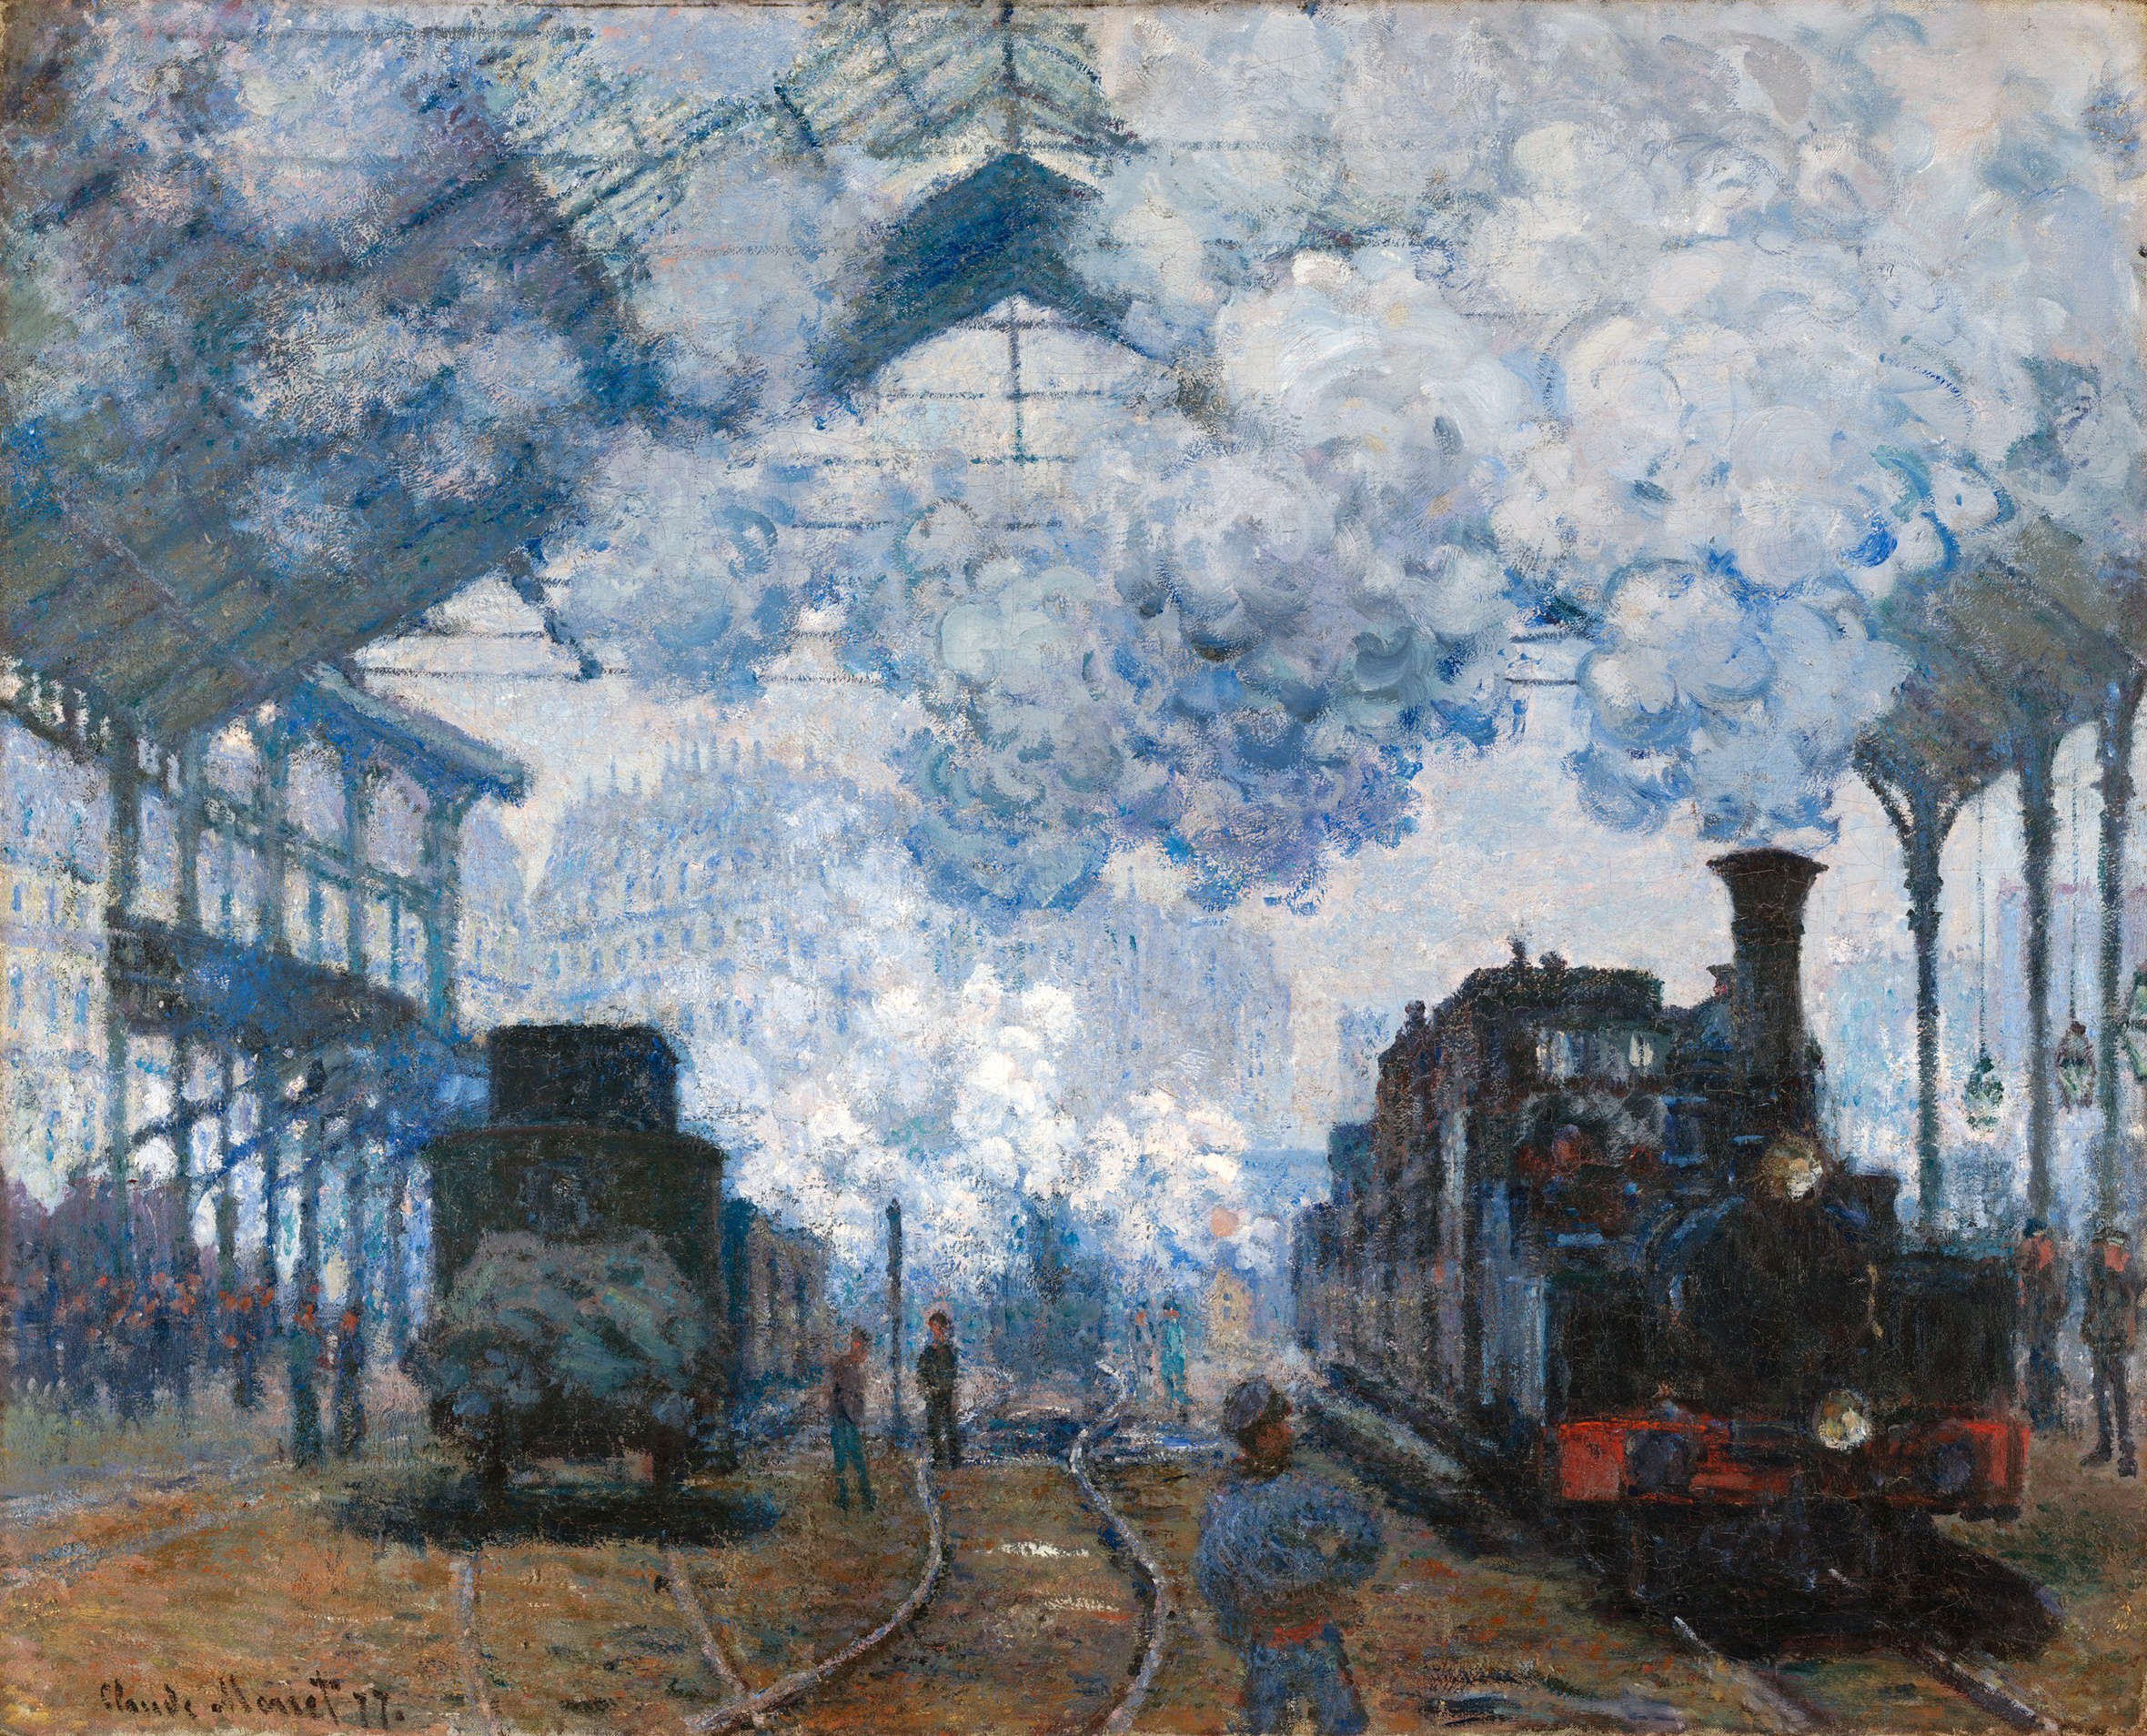 Gara Saint Lazare, venirea unui tren by Claude Monet - 1877 - 80 x 98 cm 